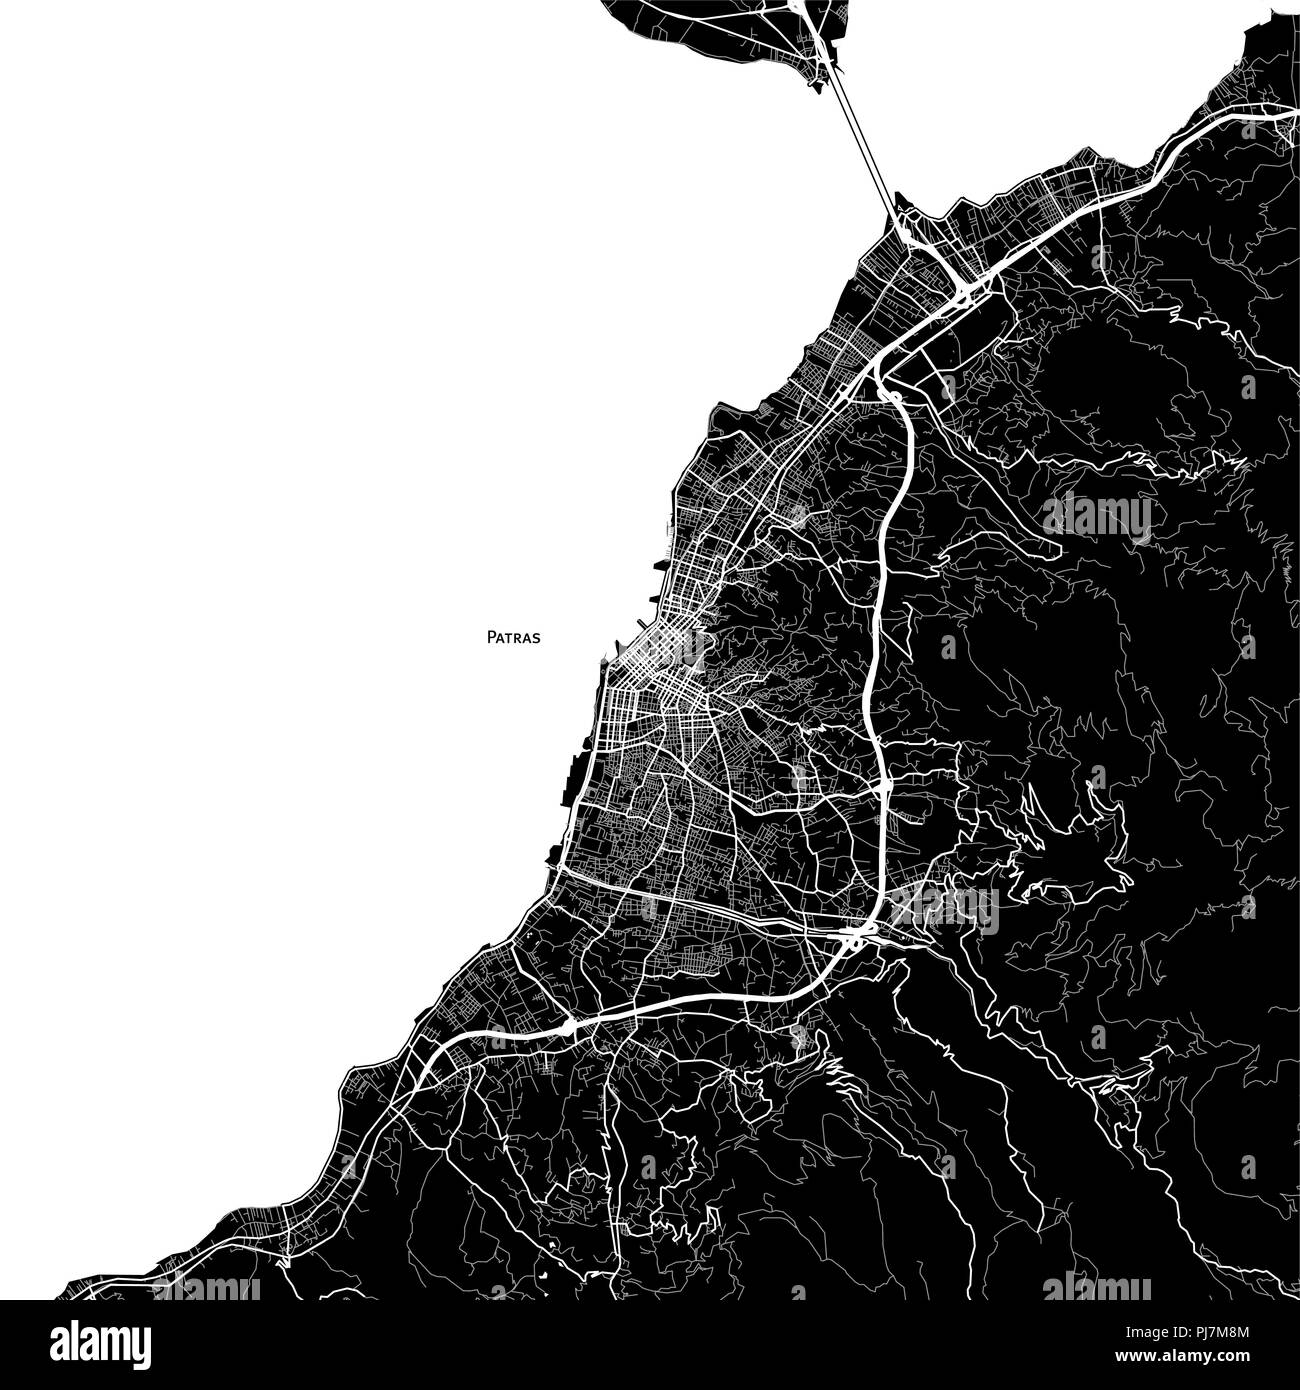 Mapa de la zona de Patras, Grecia. Fondo oscuro versión para infografía y proyectos de comercialización. Foto de stock